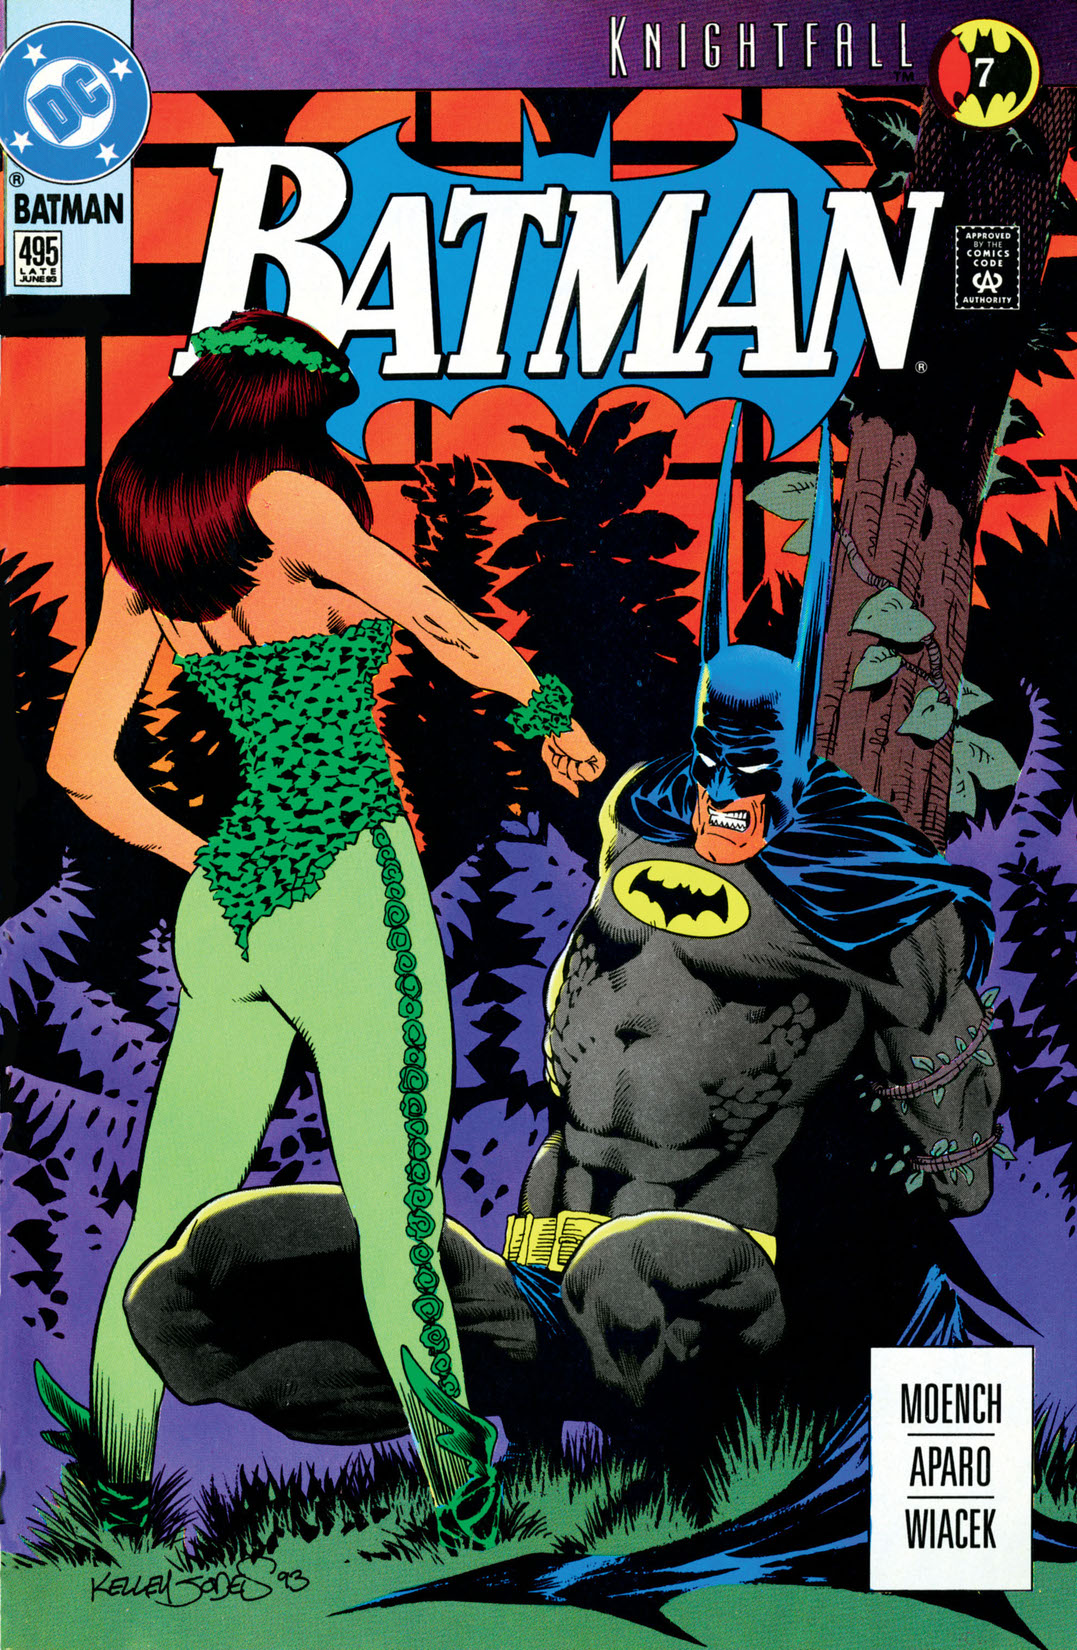 Batman (1940-) #495 preview images